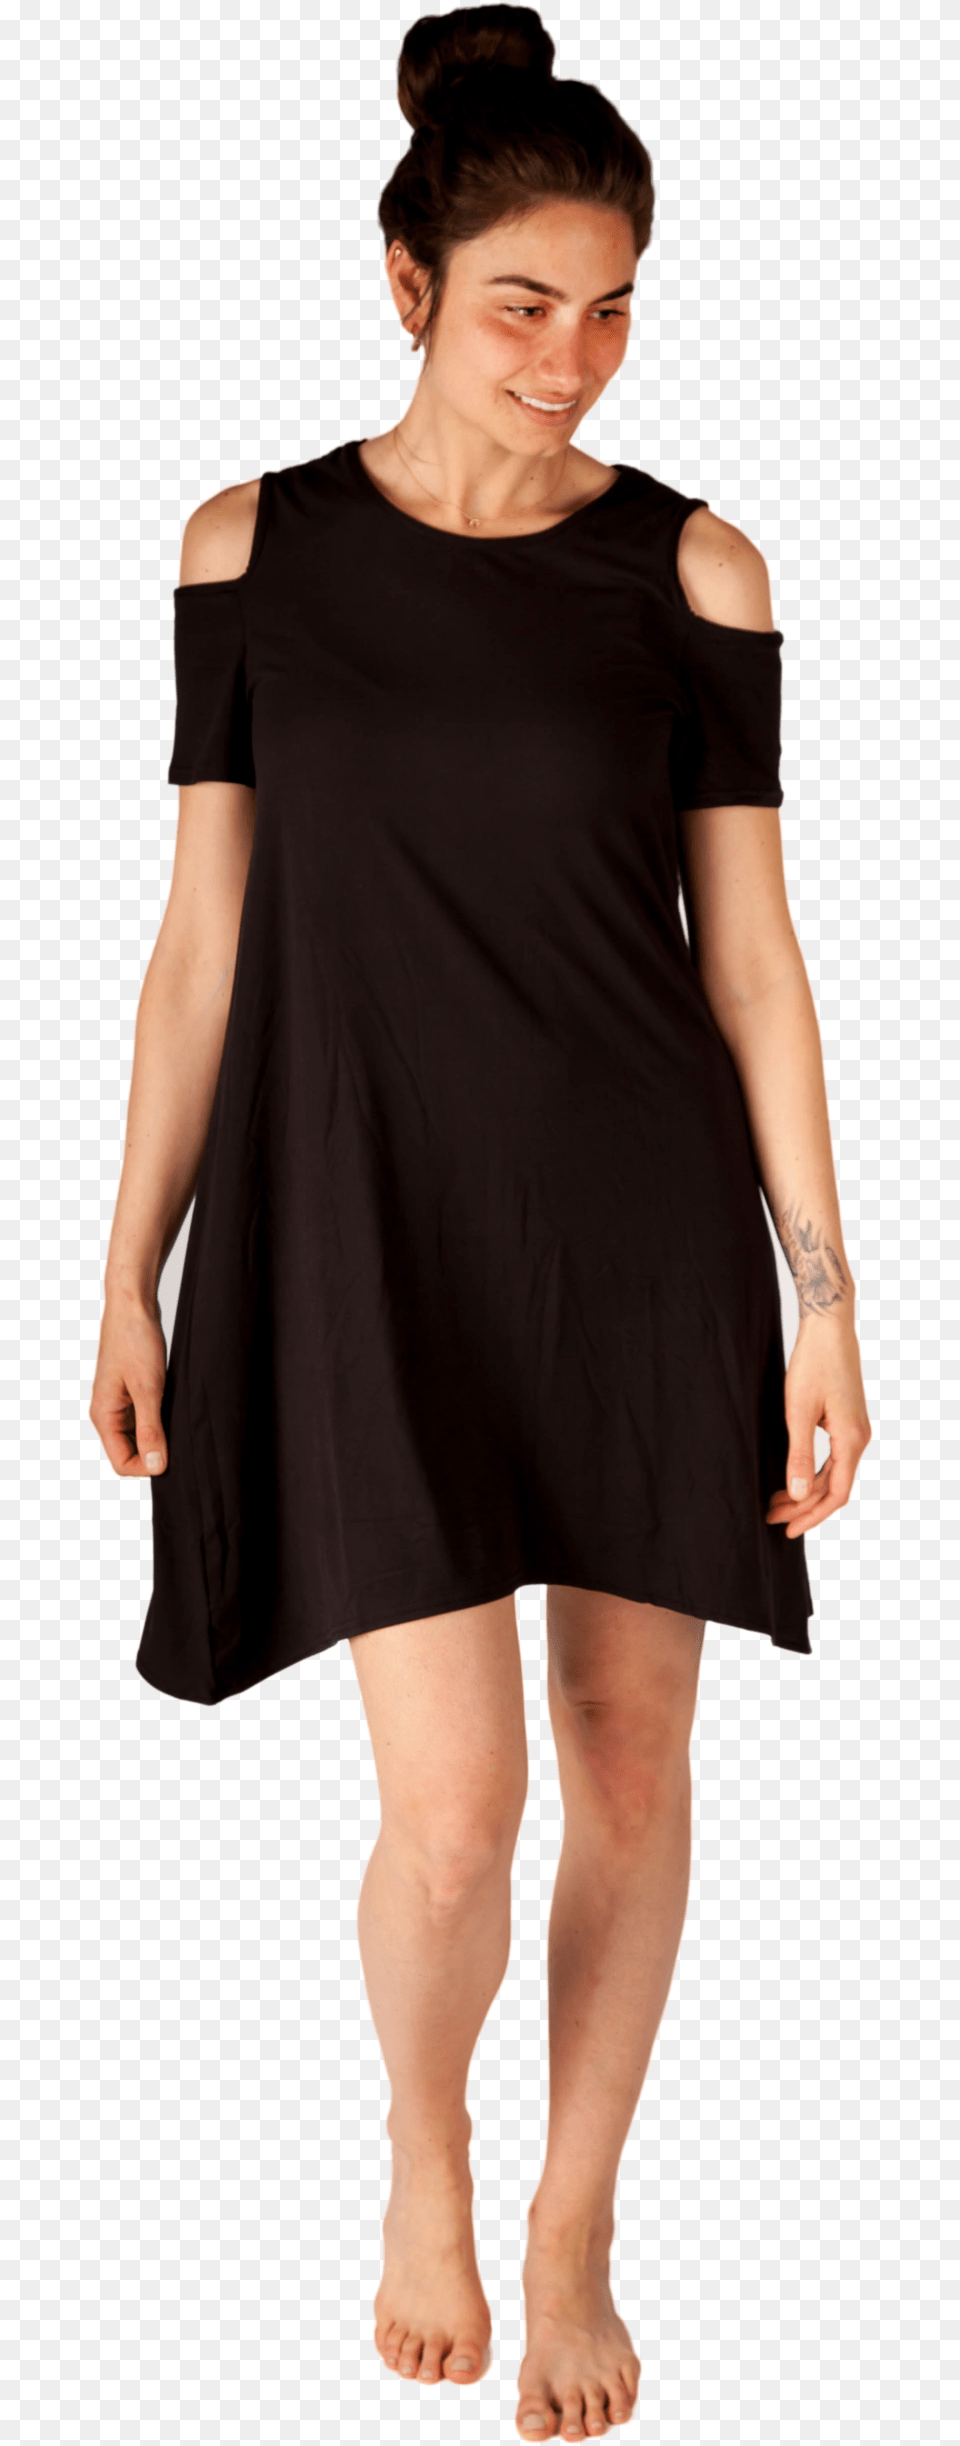 Black Cold Shoulder Dress Sukienka Z Dugim Rkawem, Adult, Clothing, Female, Person Png Image